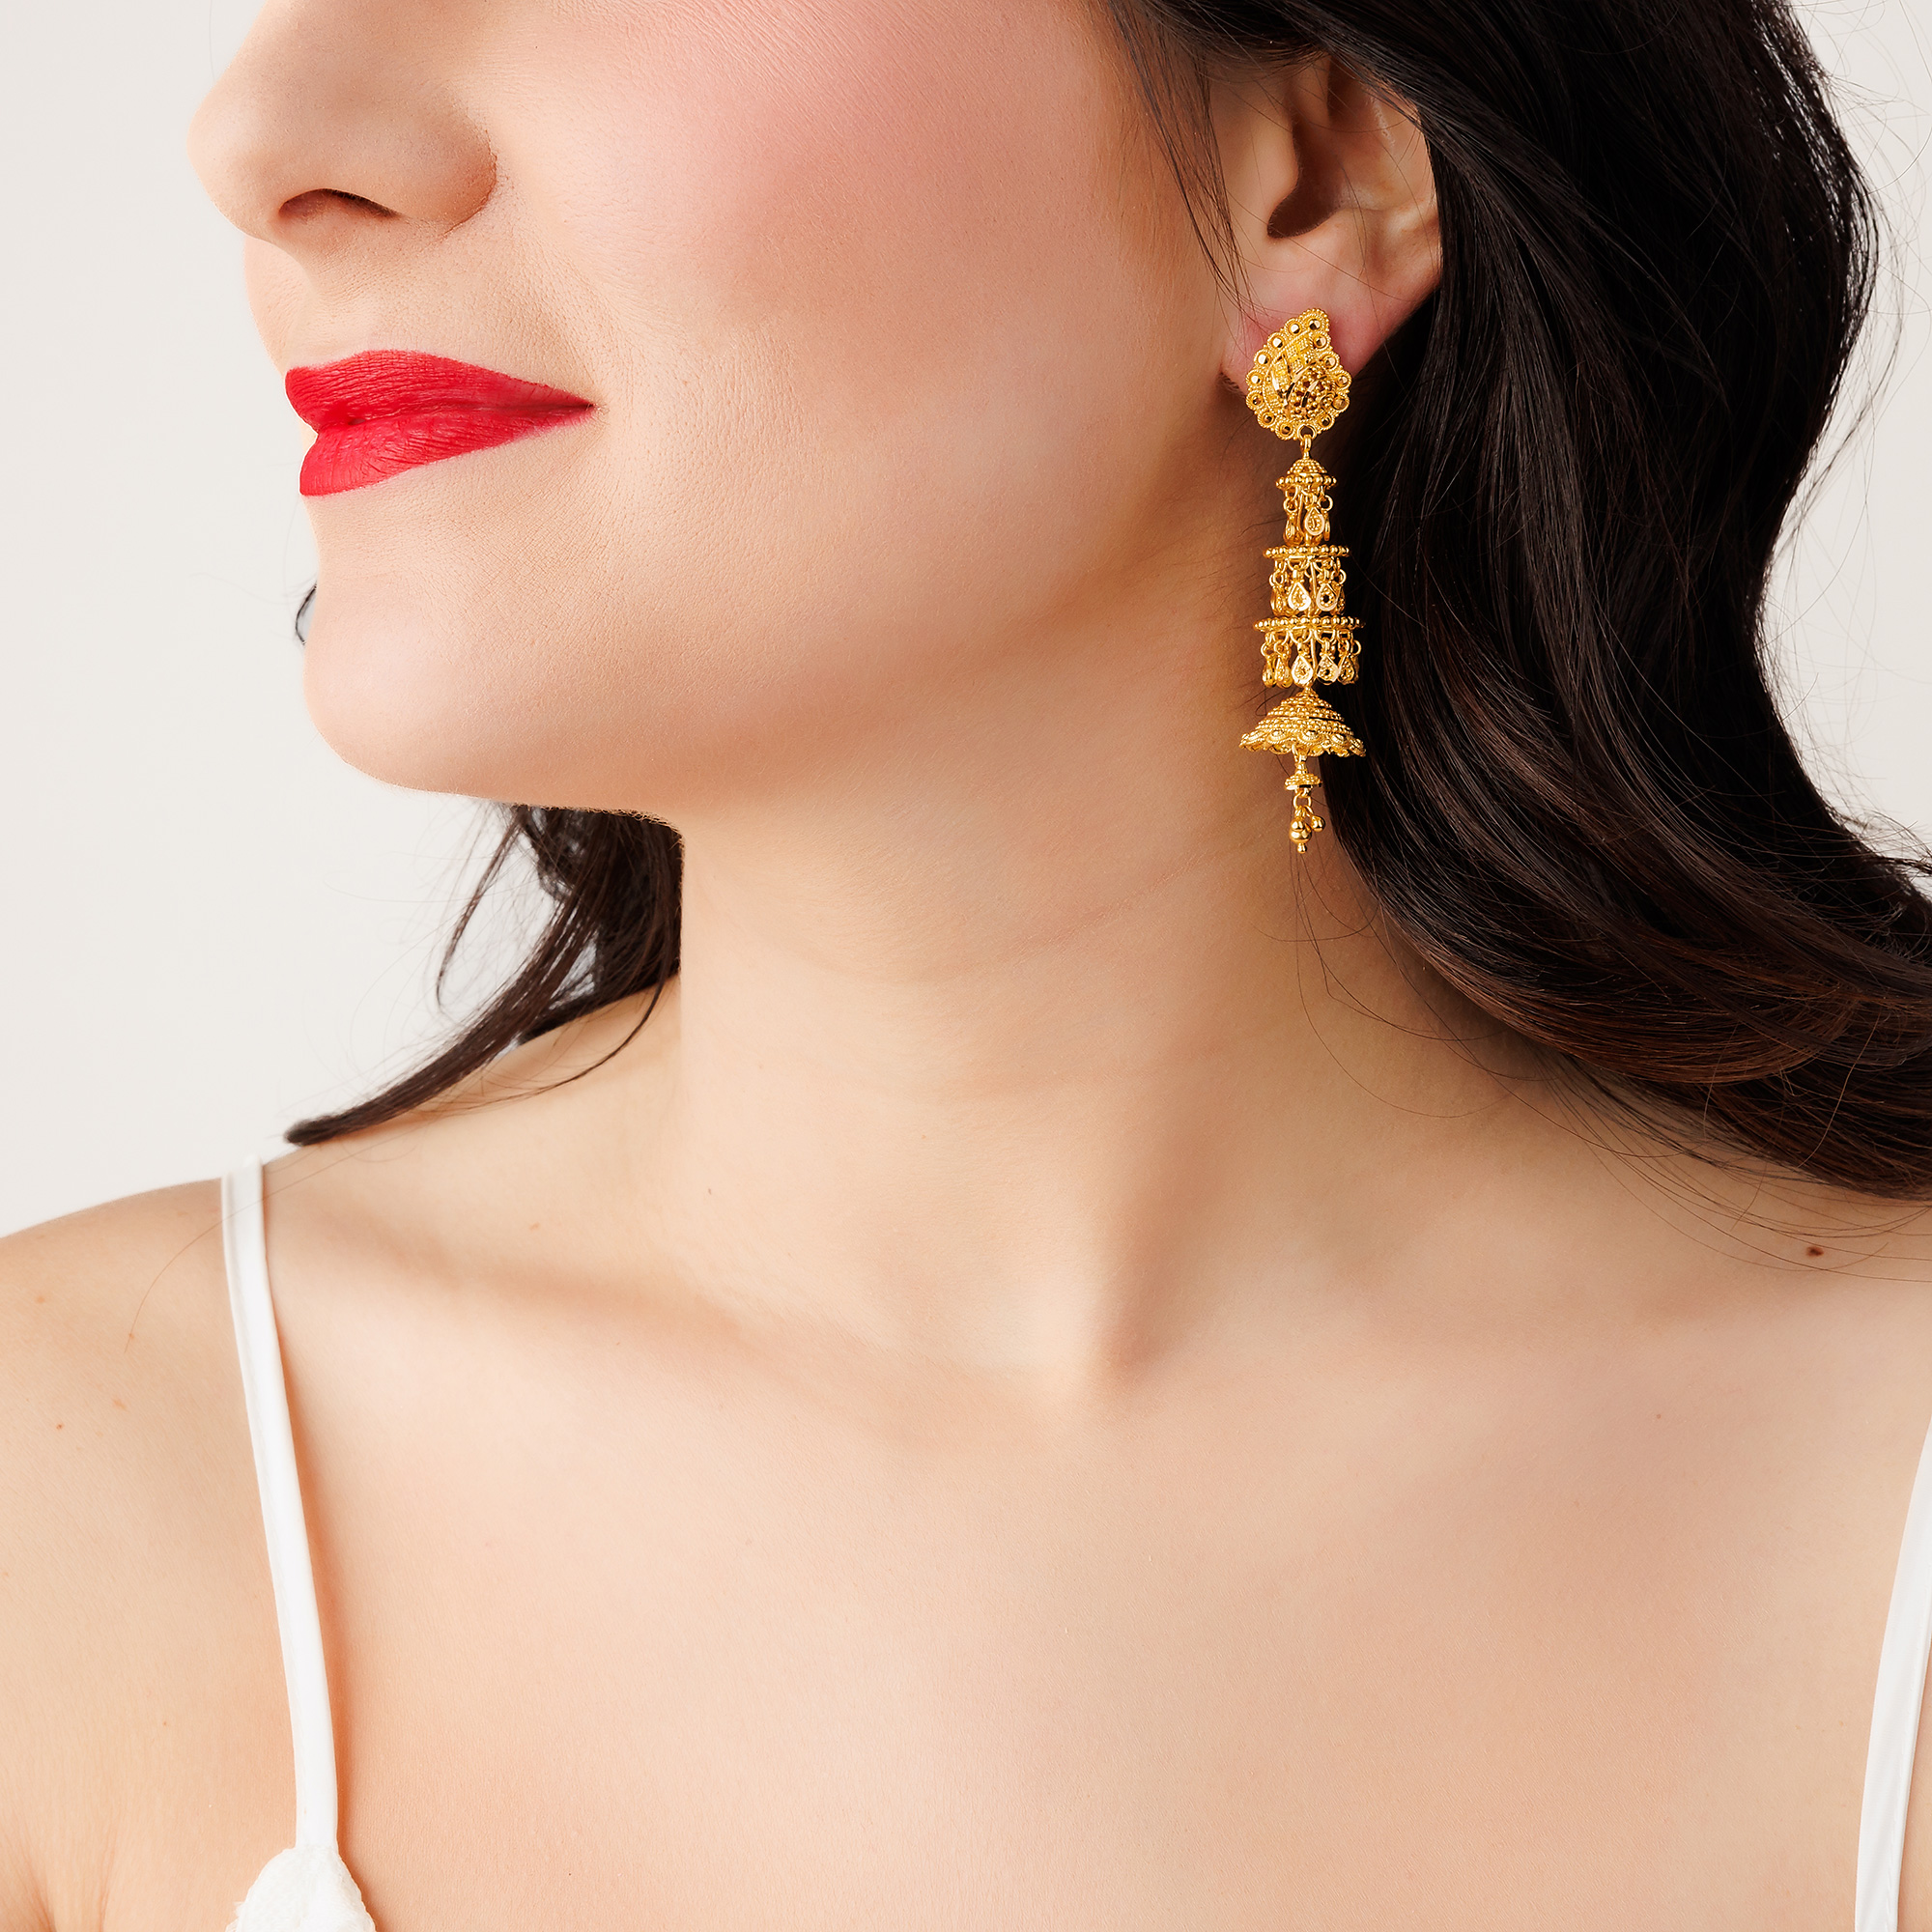 22K Gold Filigree Jhumka Earrings (24.00G)